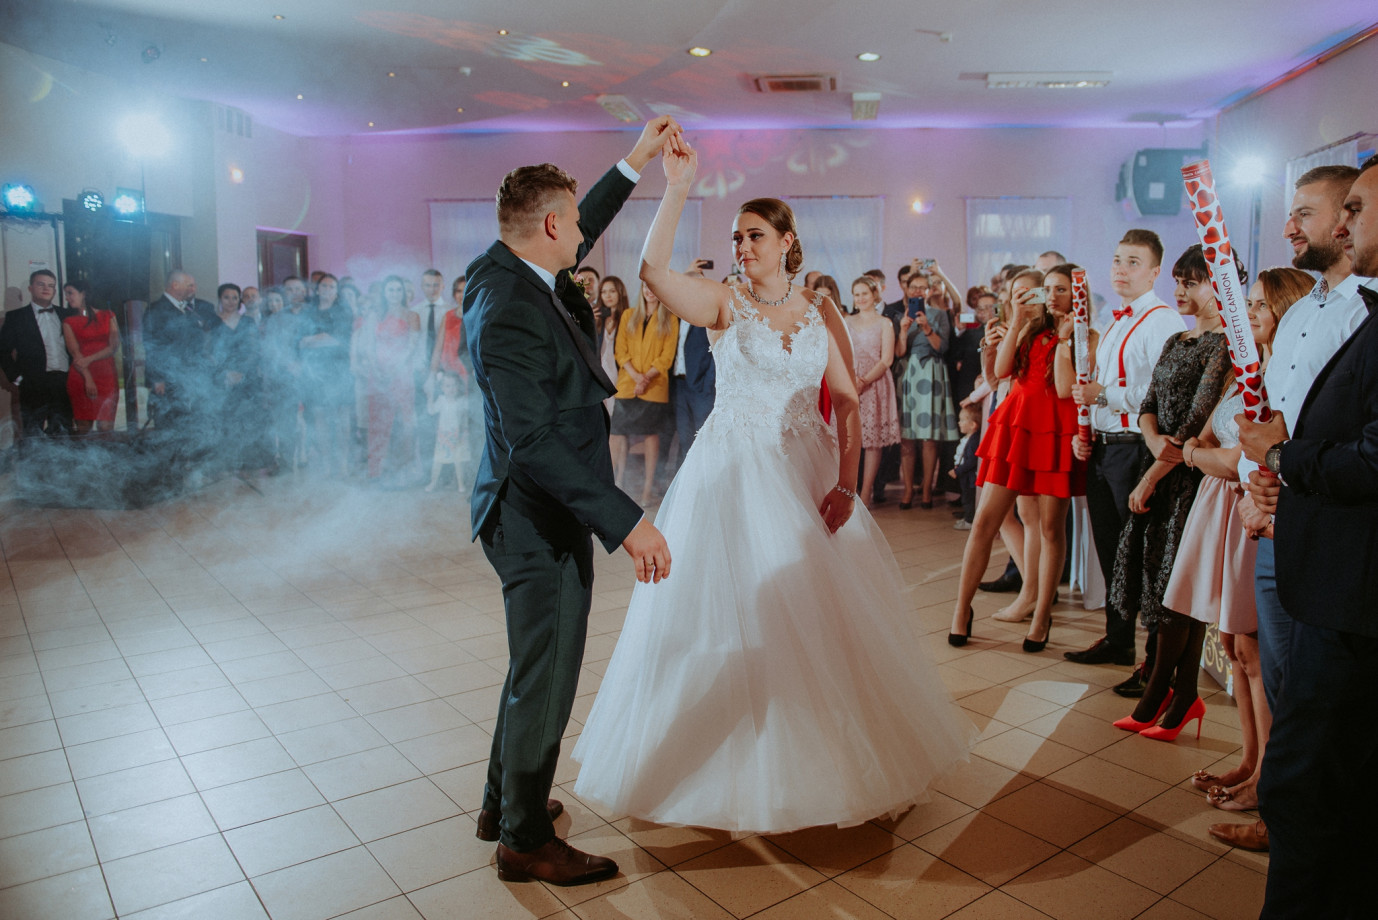 fotograf wroclaw krystian-lewicki-fotografia portfolio zdjecia slubne inspiracje wesele plener slubny sesja slubna